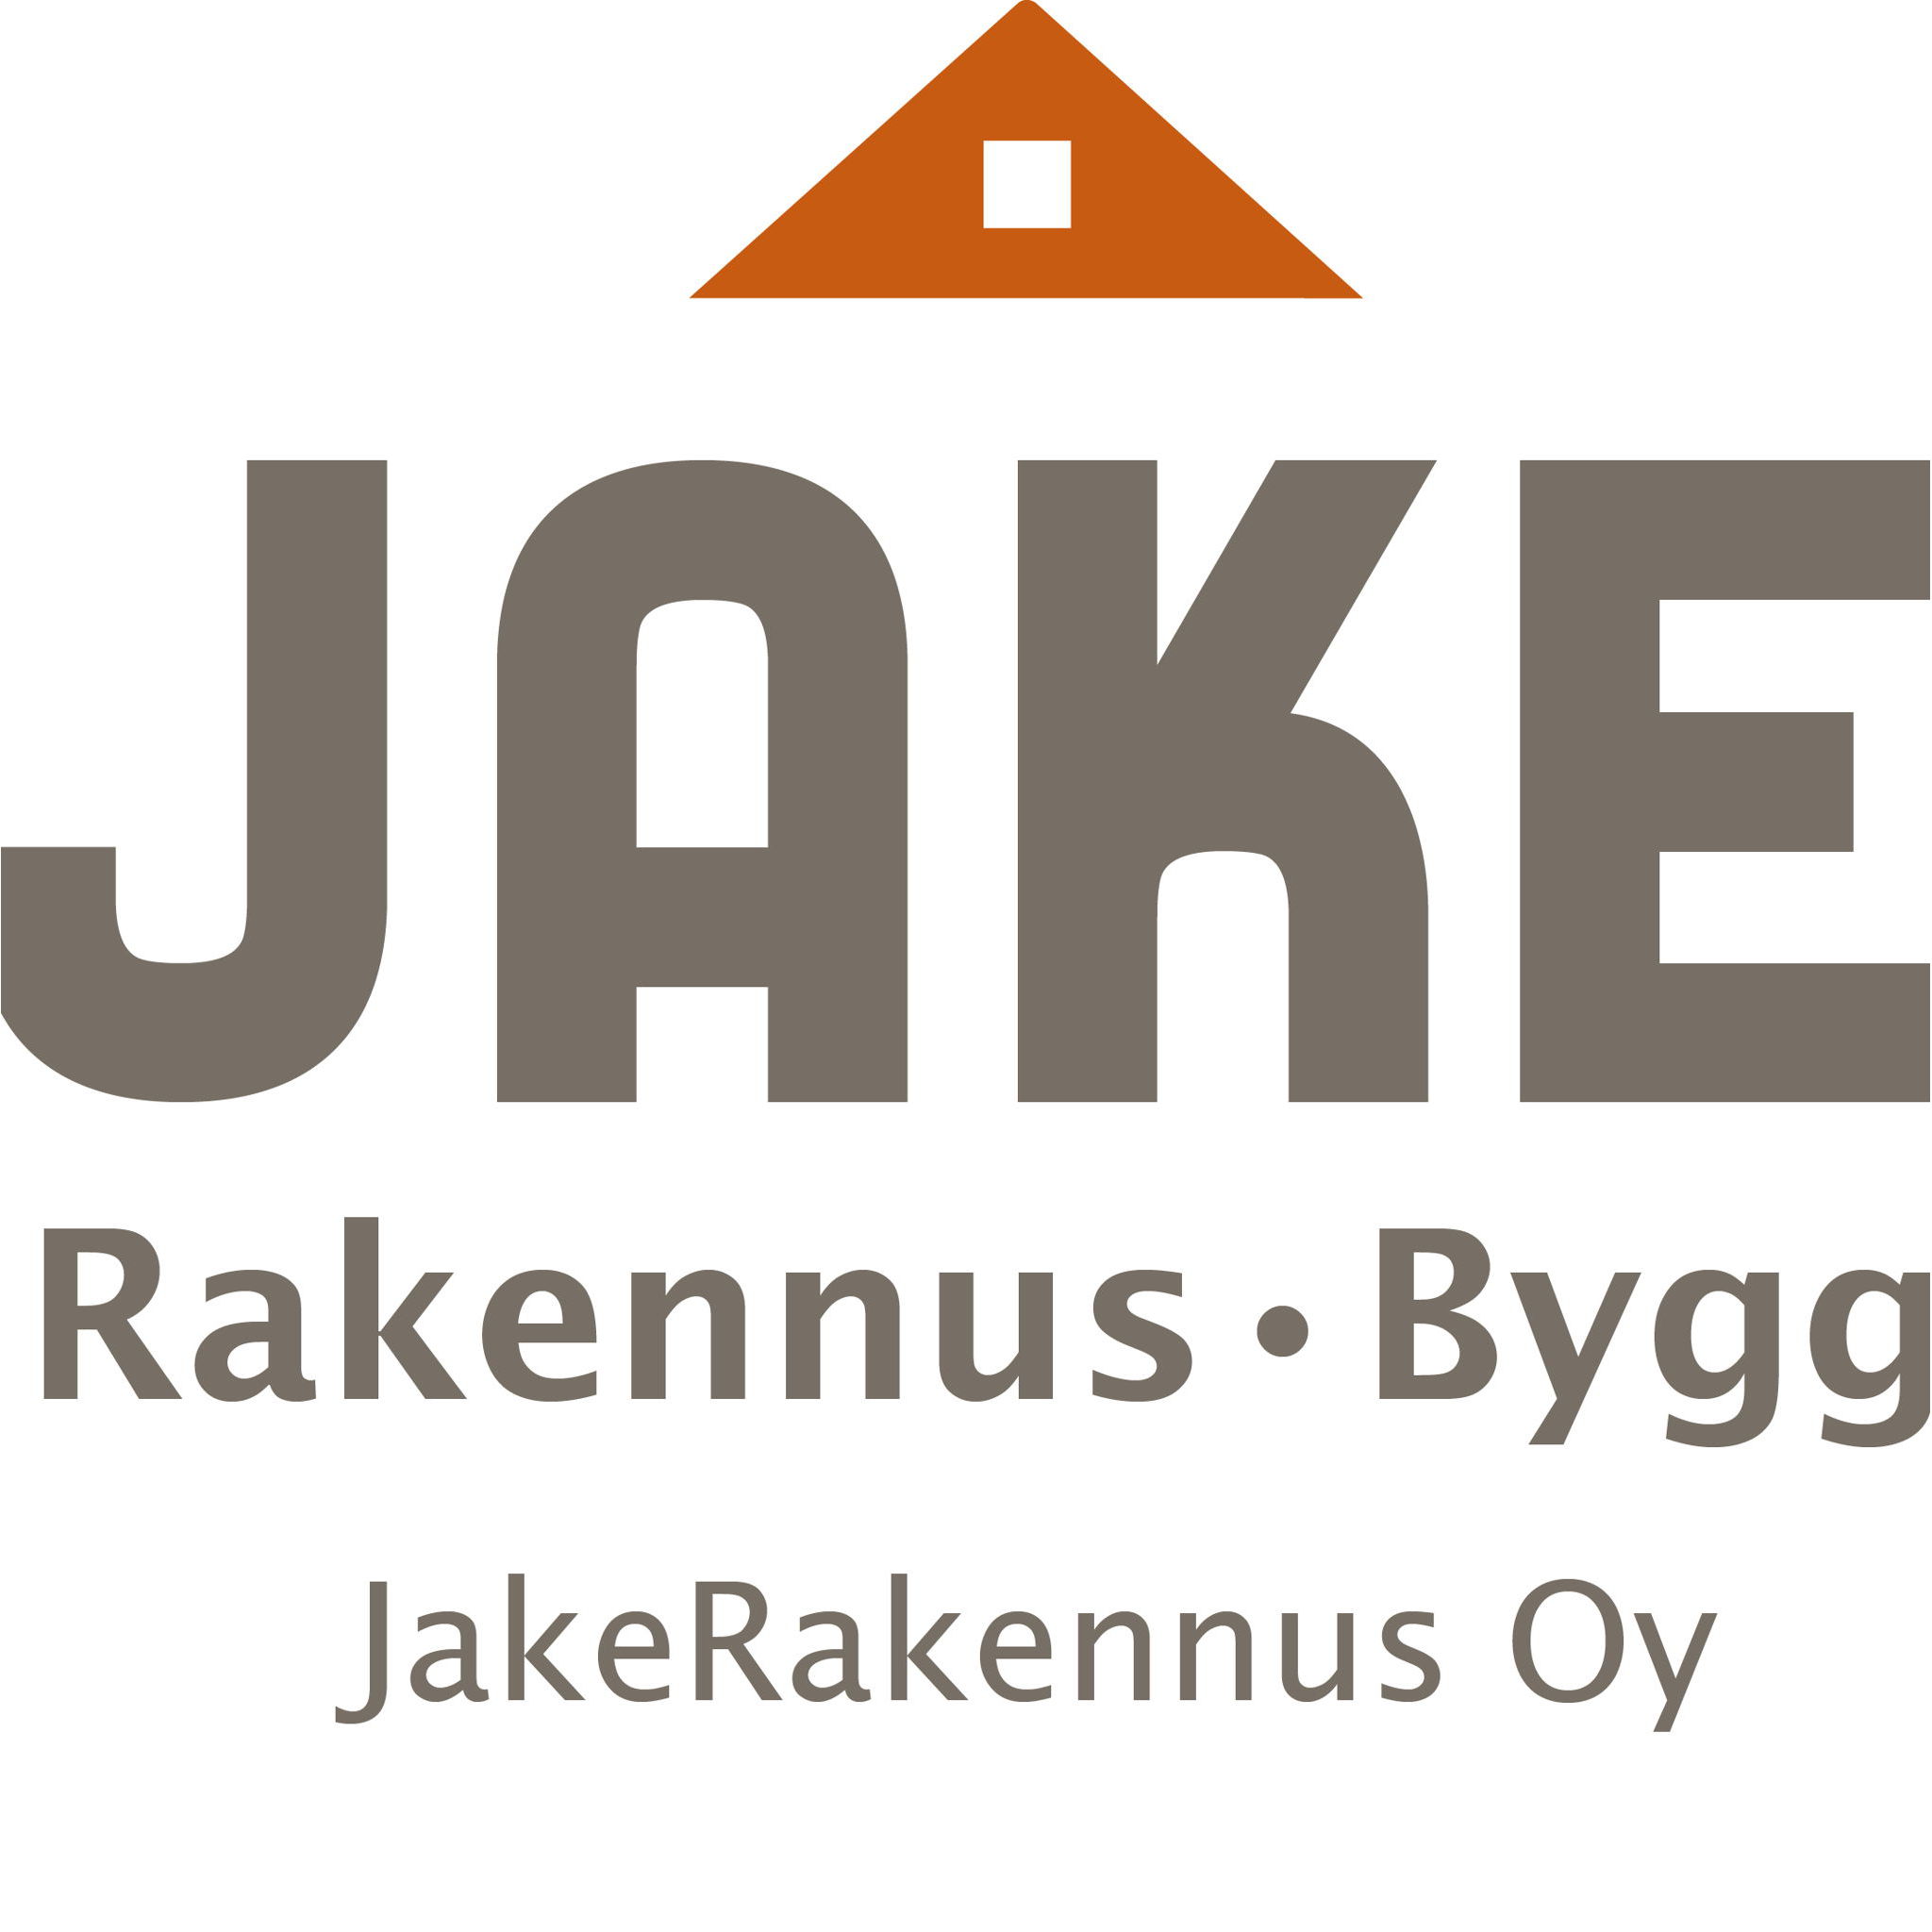 Jake Rakennus Bygg Oy Logo